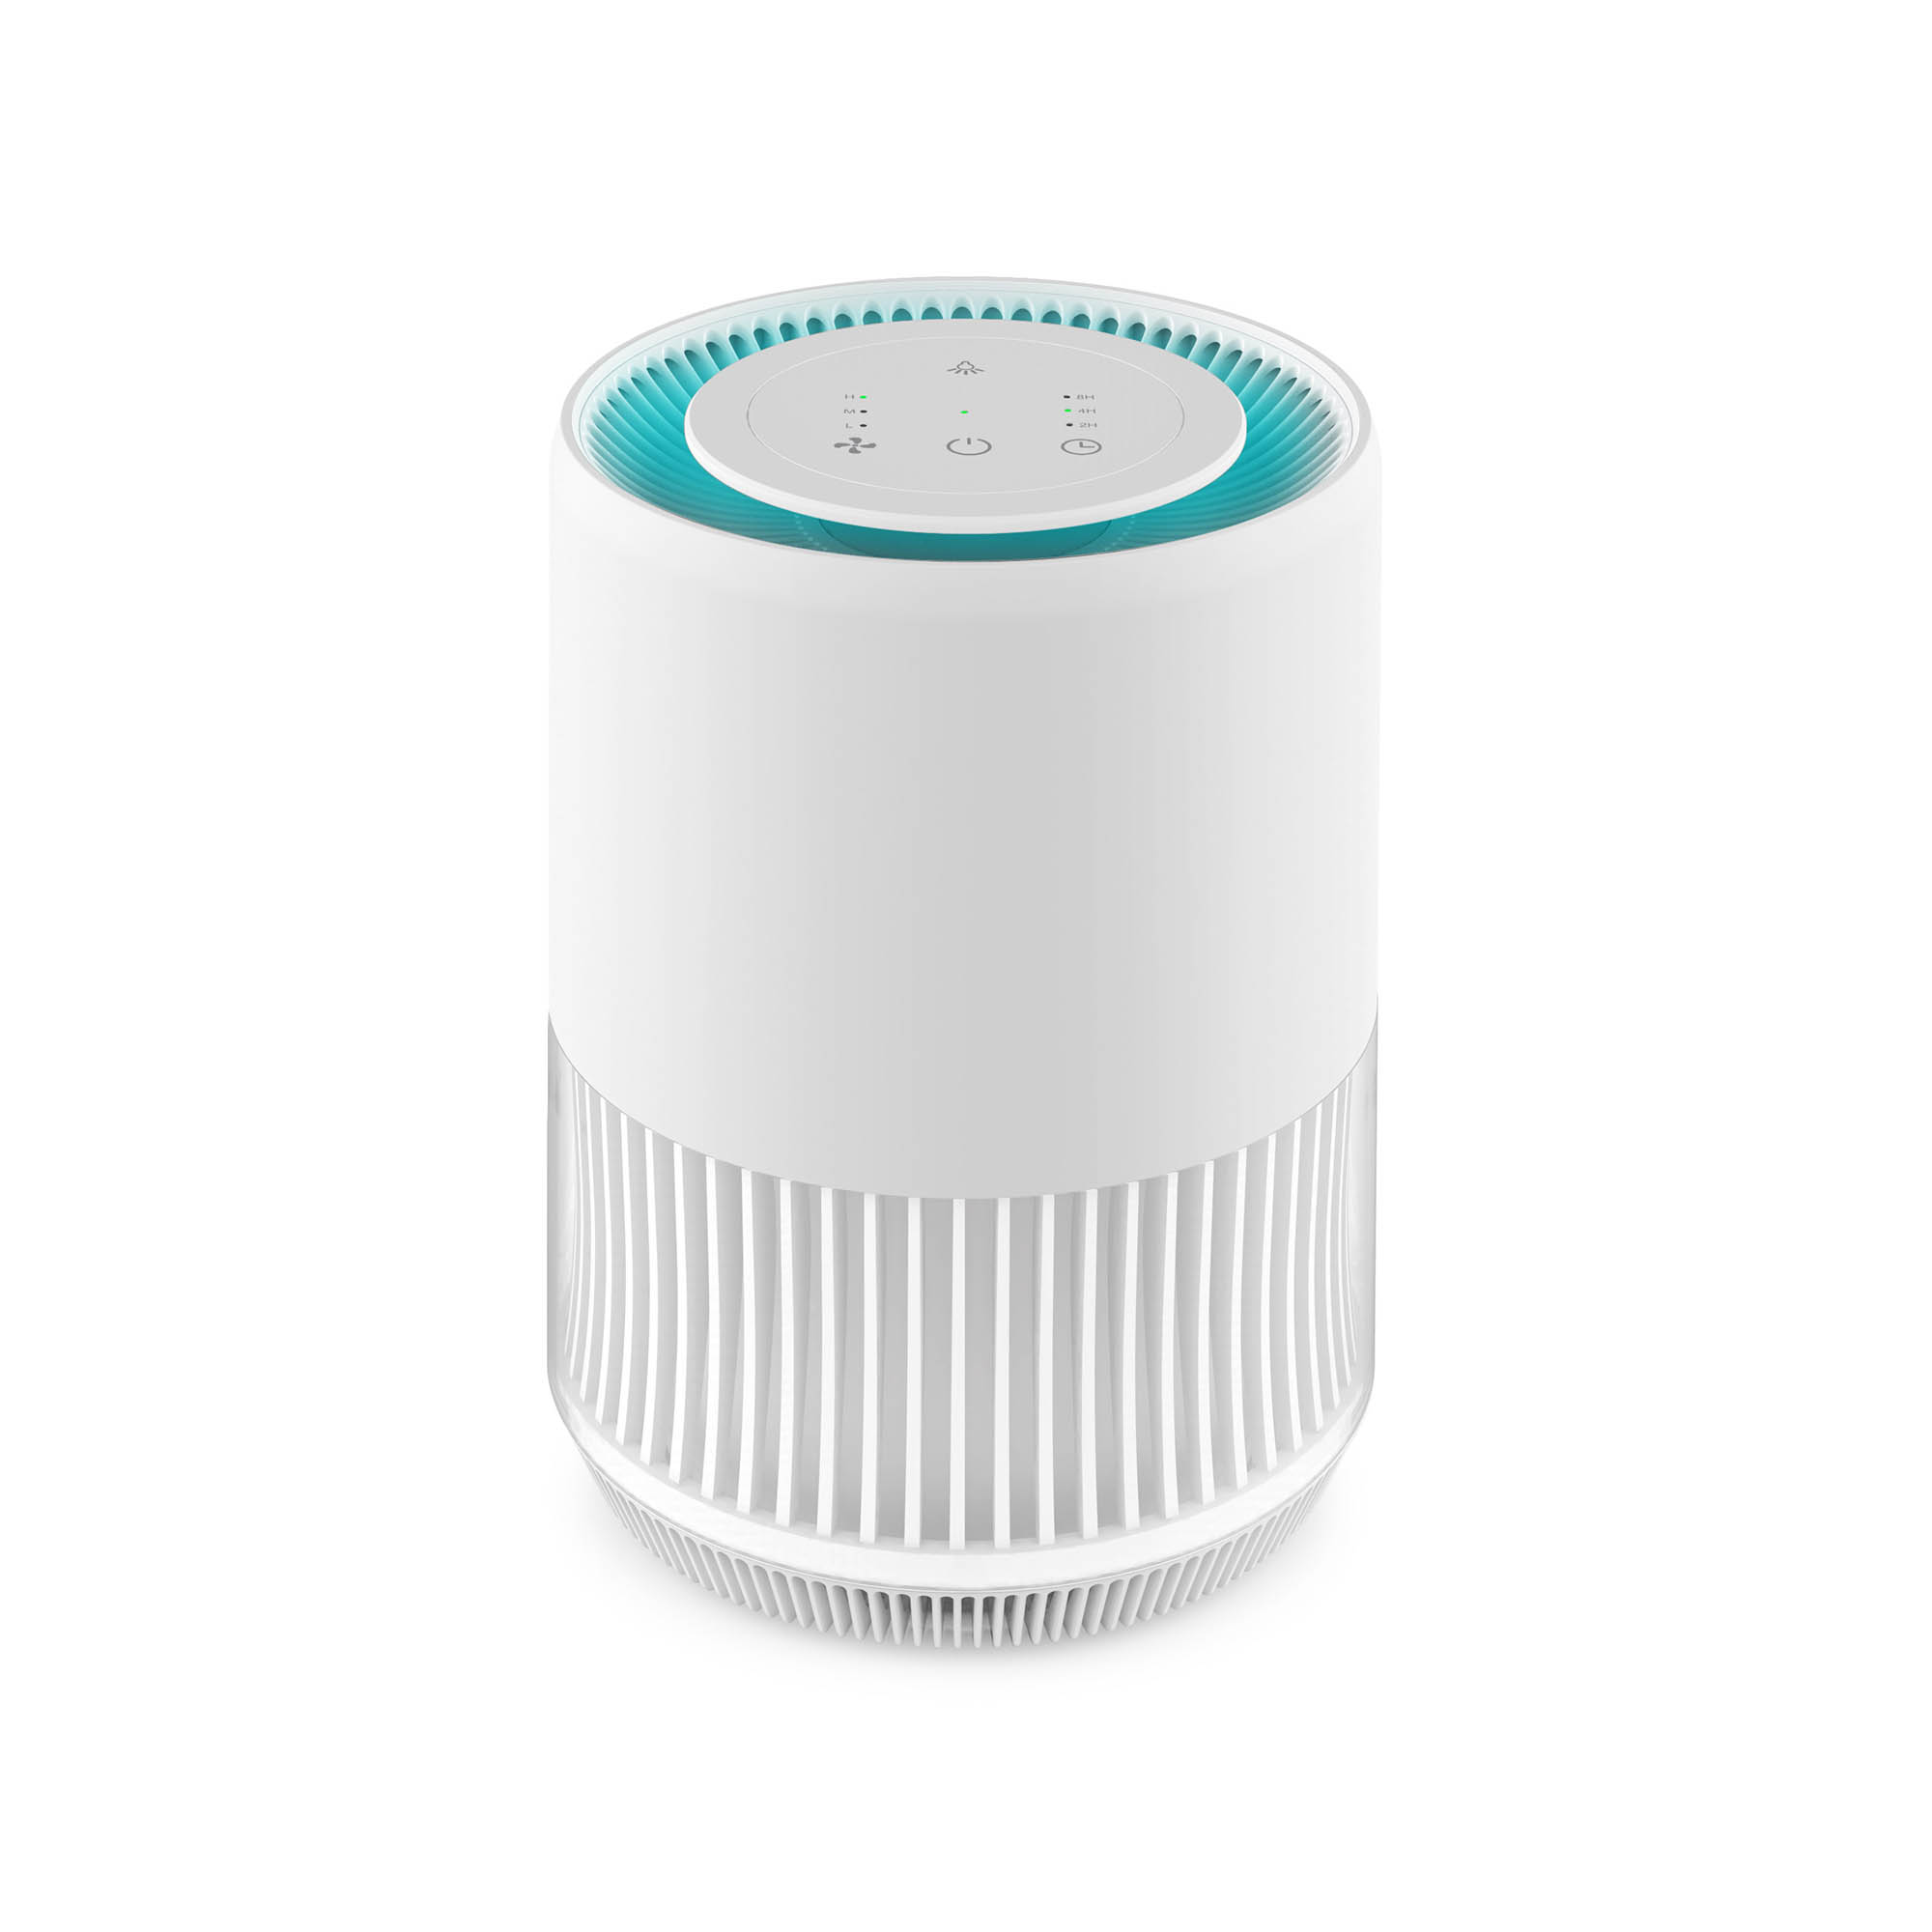 Очиститель воздуха Hiper Iot Purifier ION mini v1, белый (HI-PIONM01)